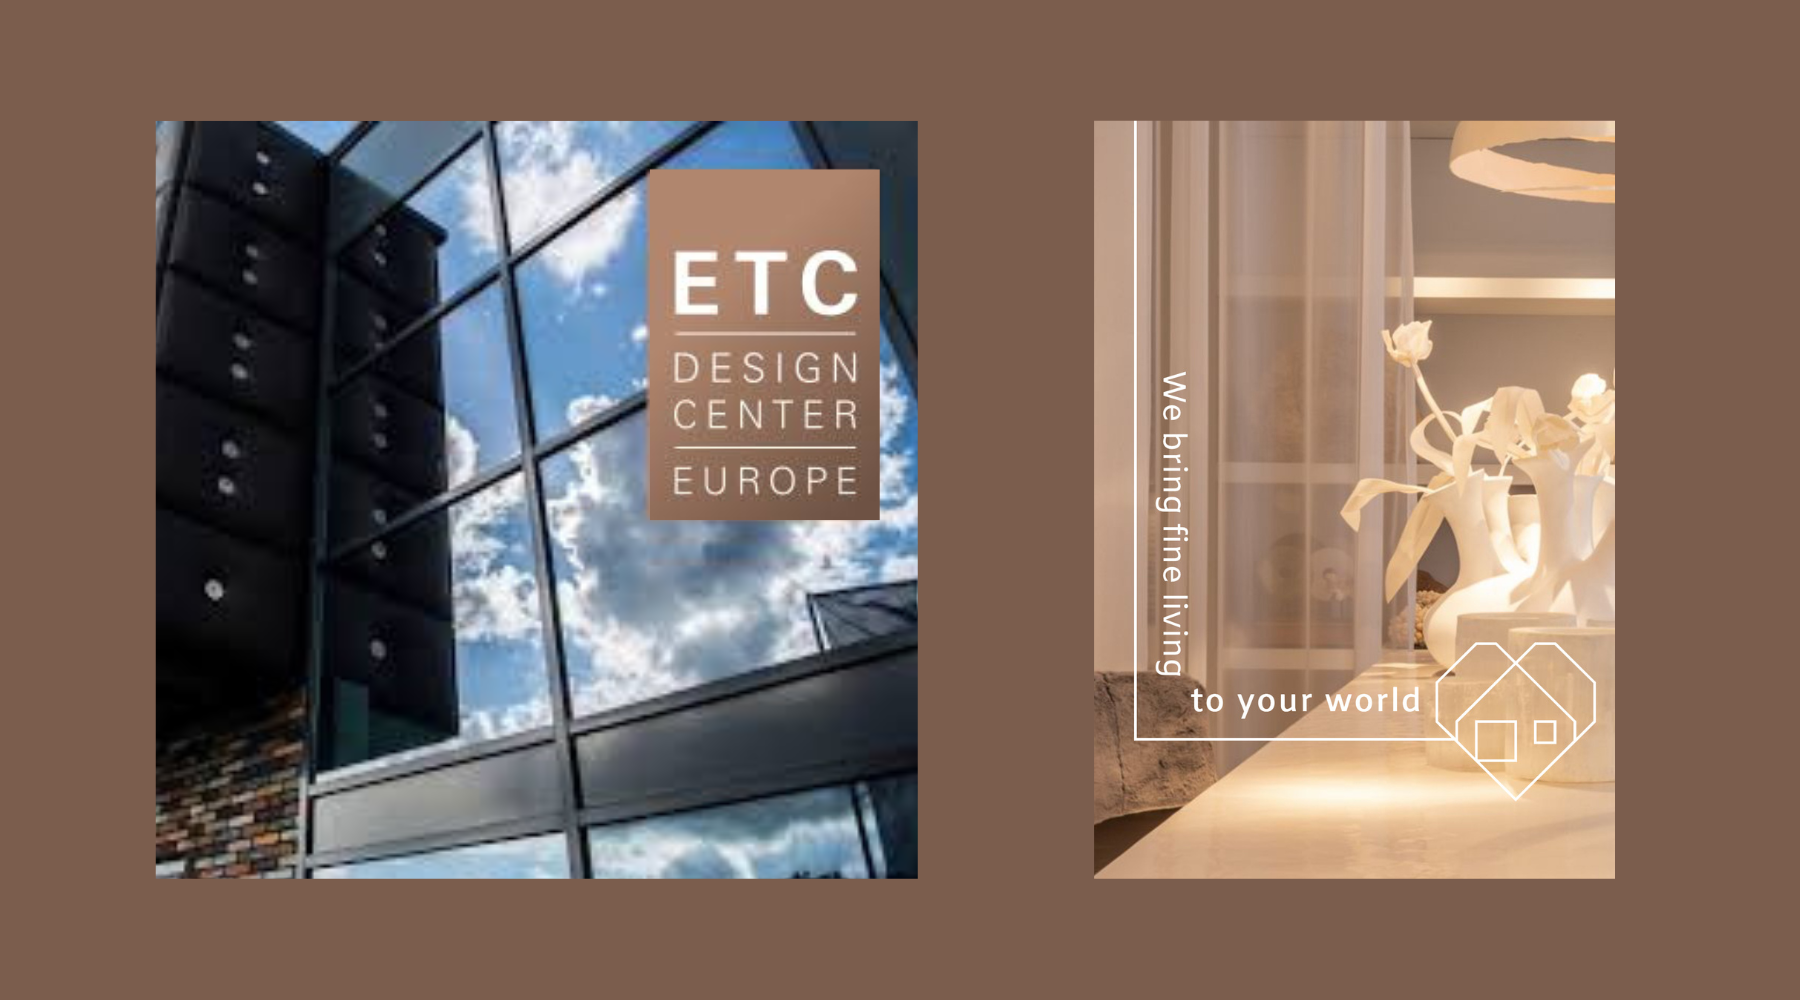 Showroom in ETC design center Europe